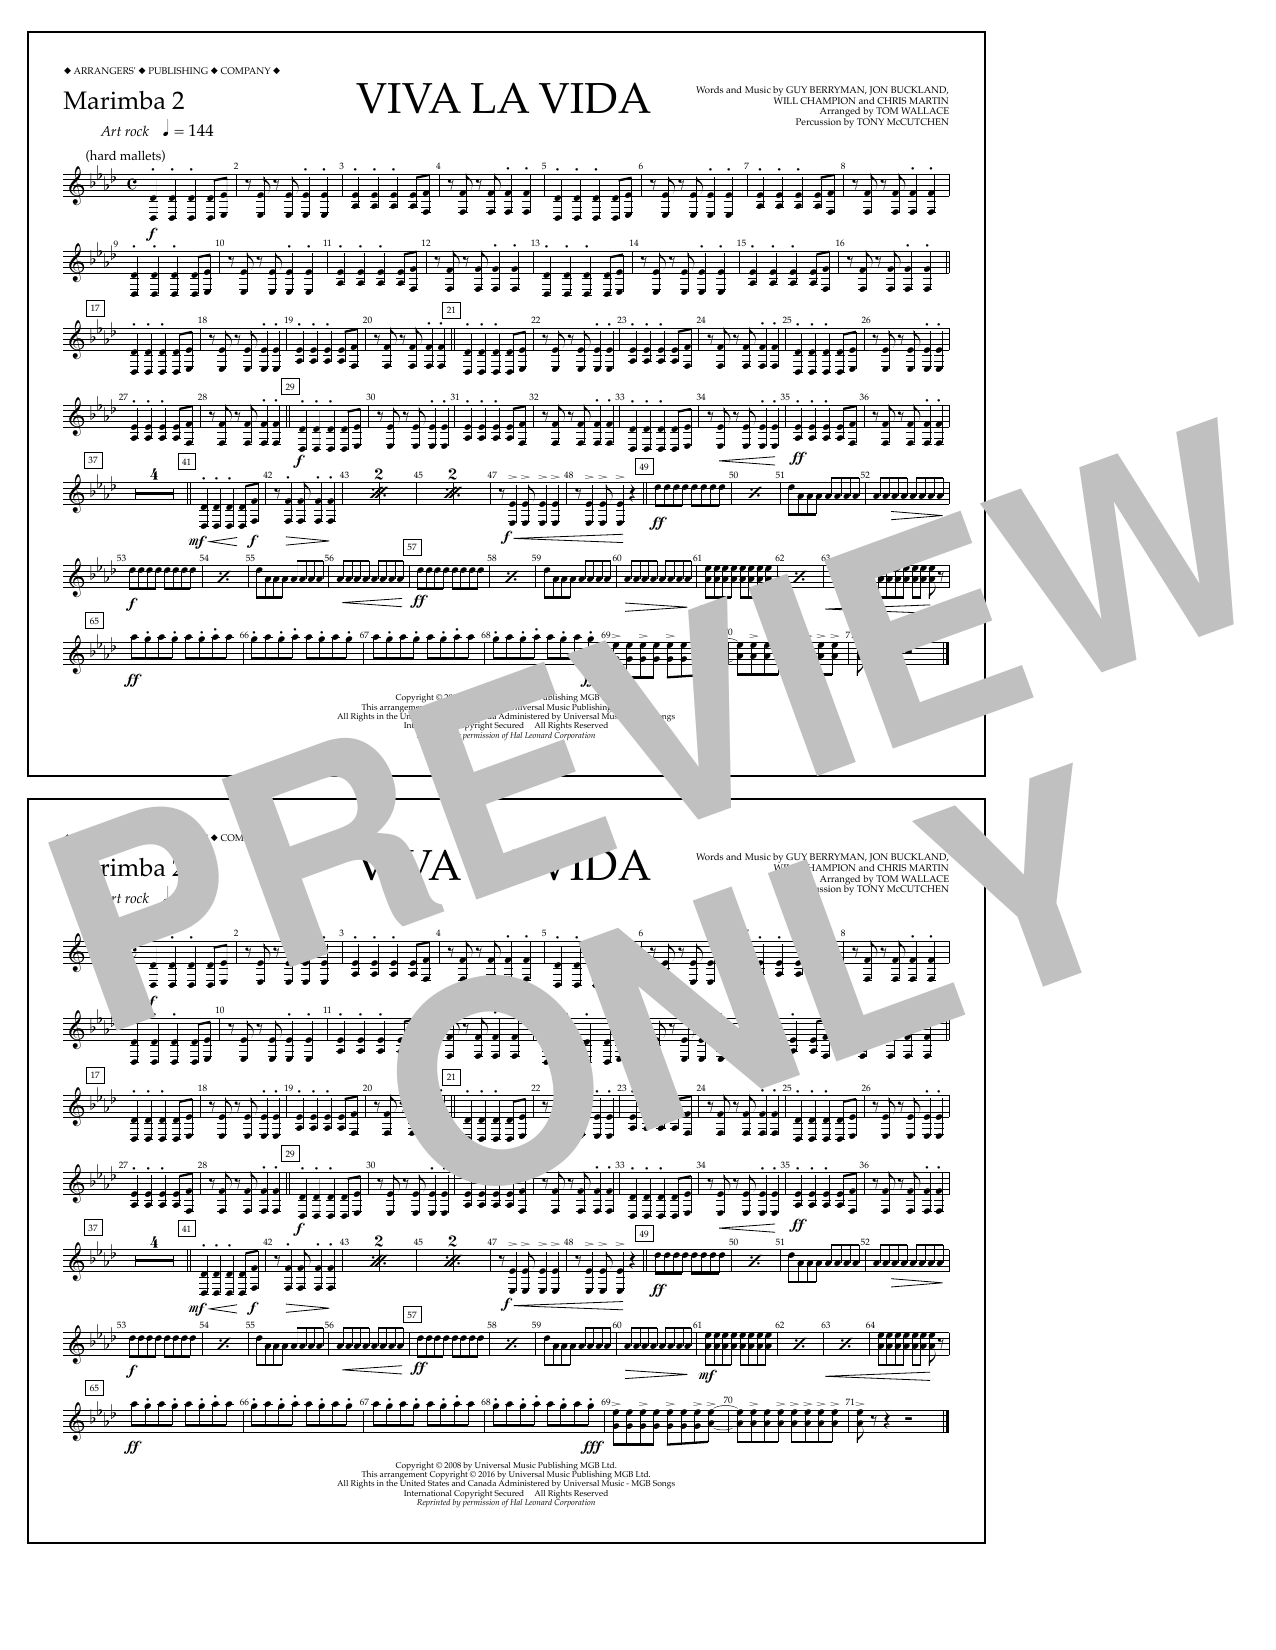 Tom Wallace Viva La Vida - Marimba 2 Sheet Music Notes & Chords for Marching Band - Download or Print PDF